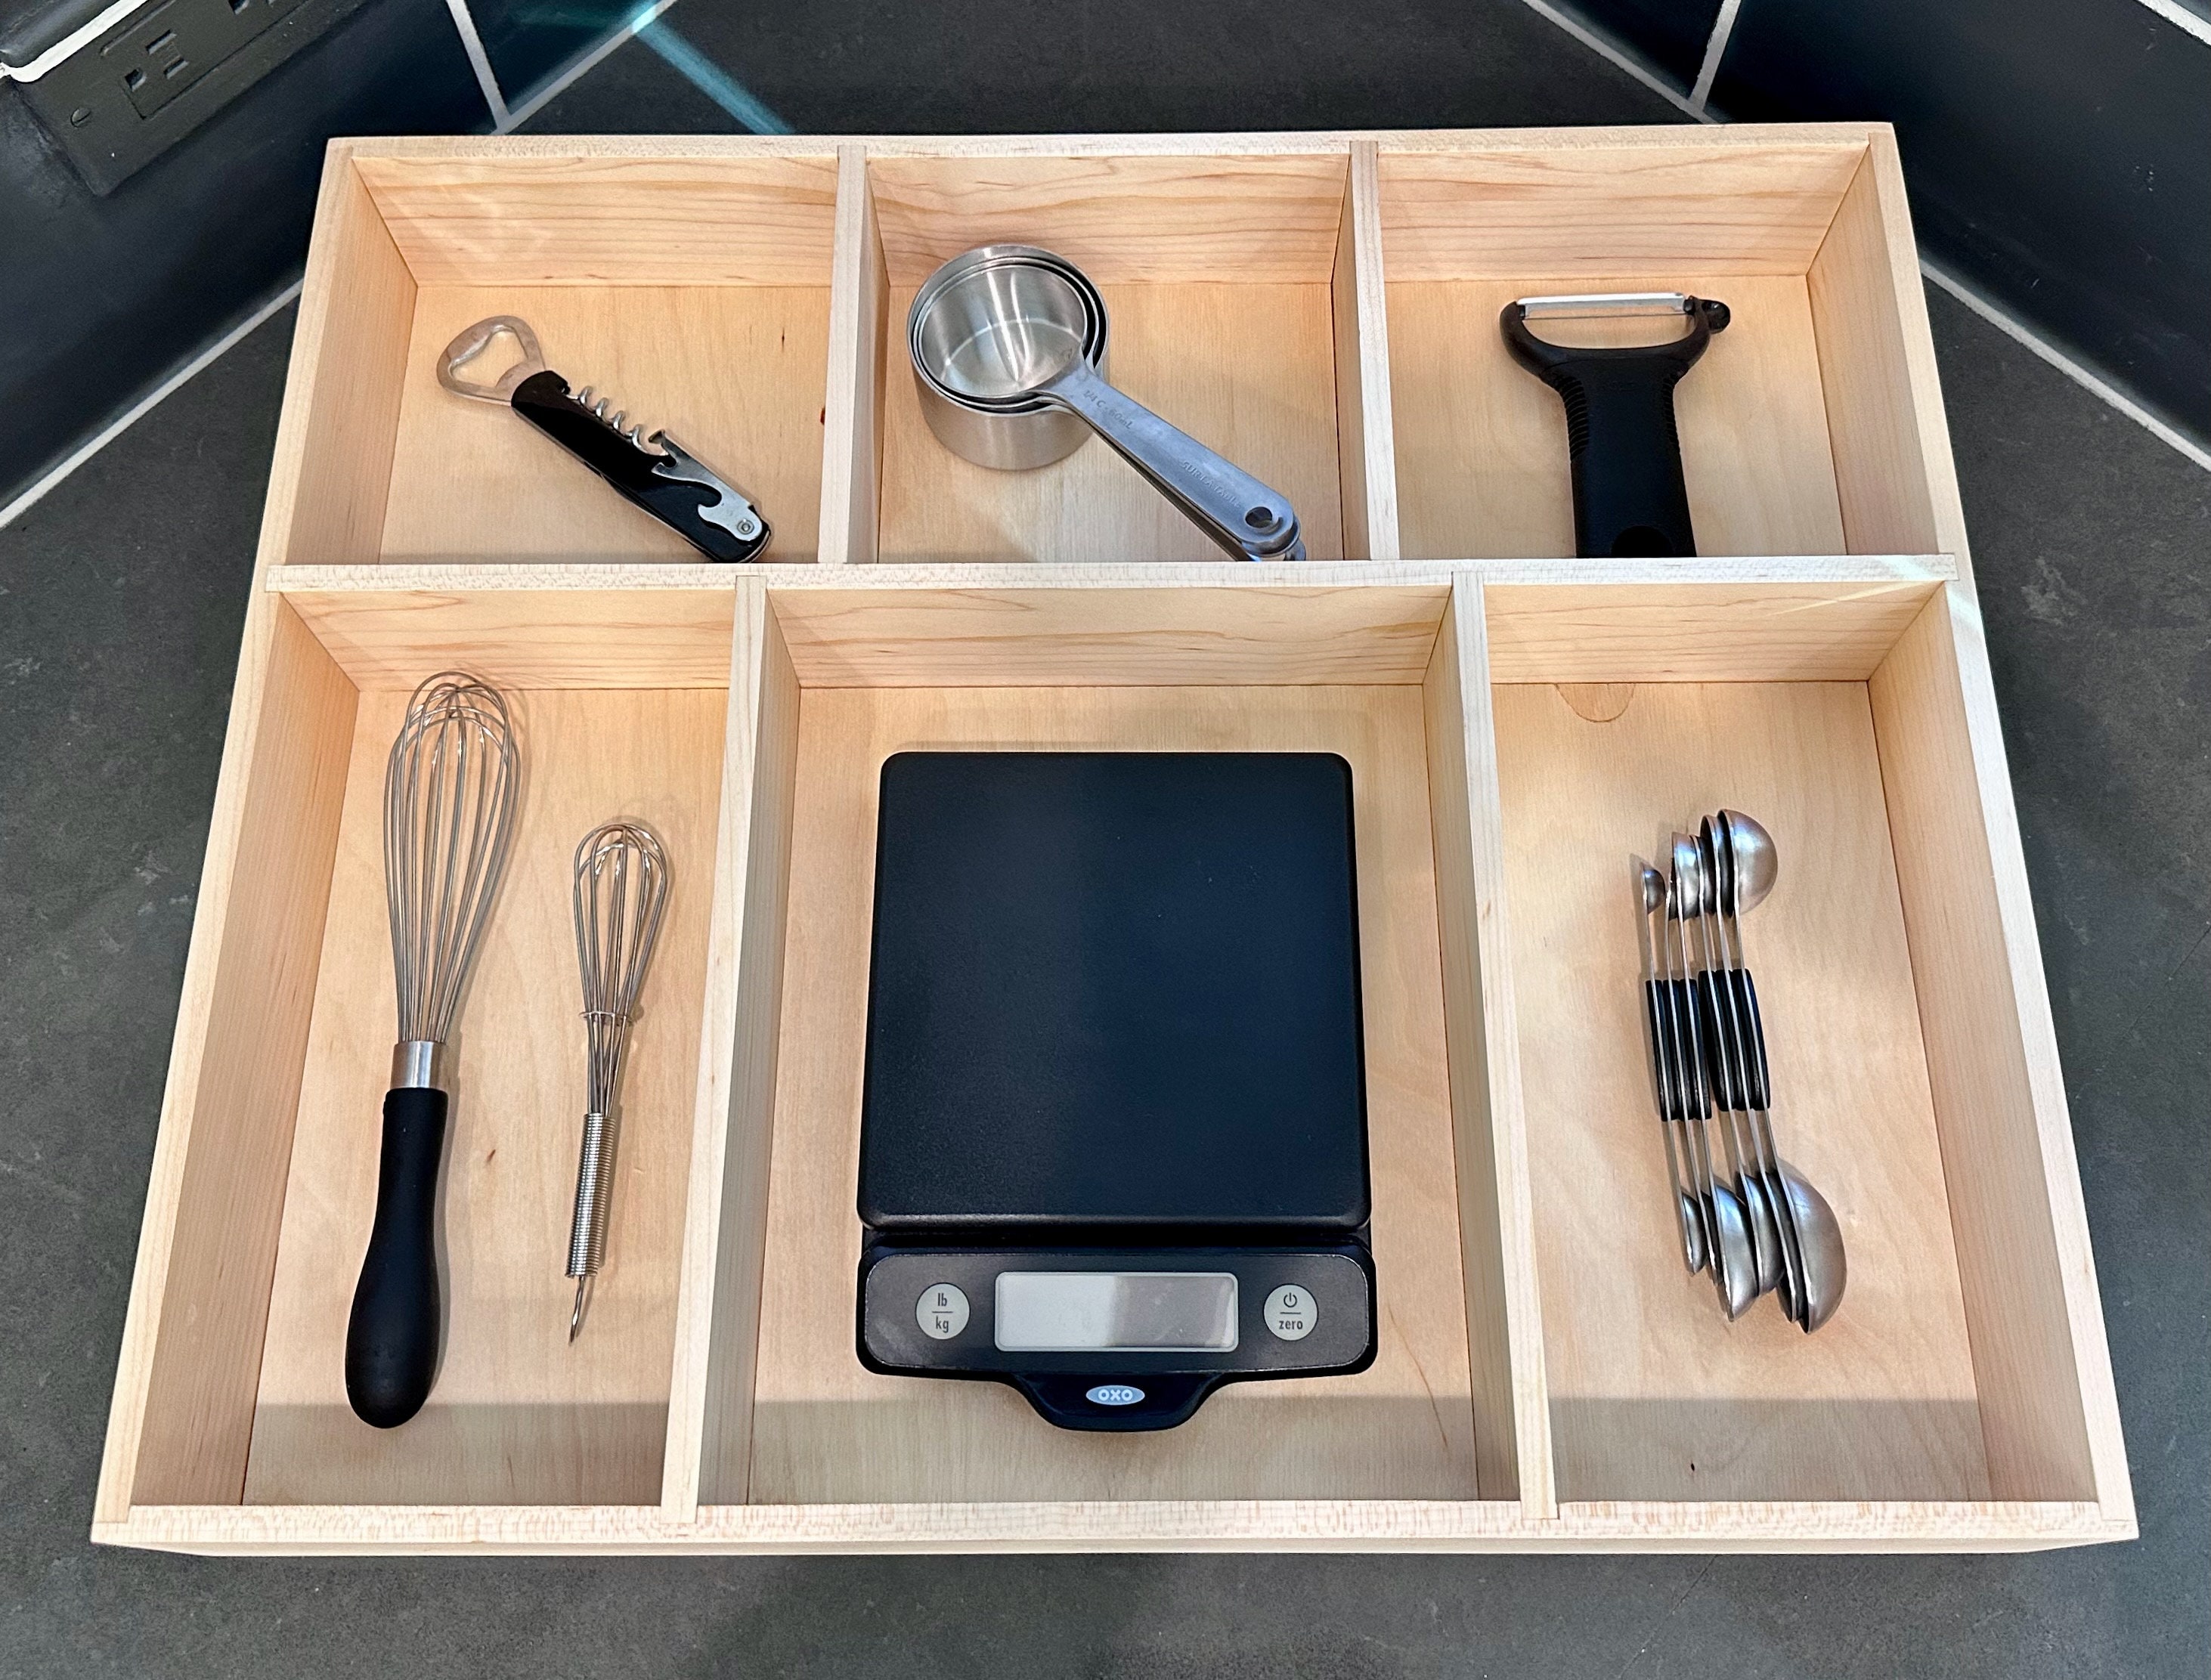 14 Cutlery Drawer Insert  Wooden Kitchen Drawer Organizer